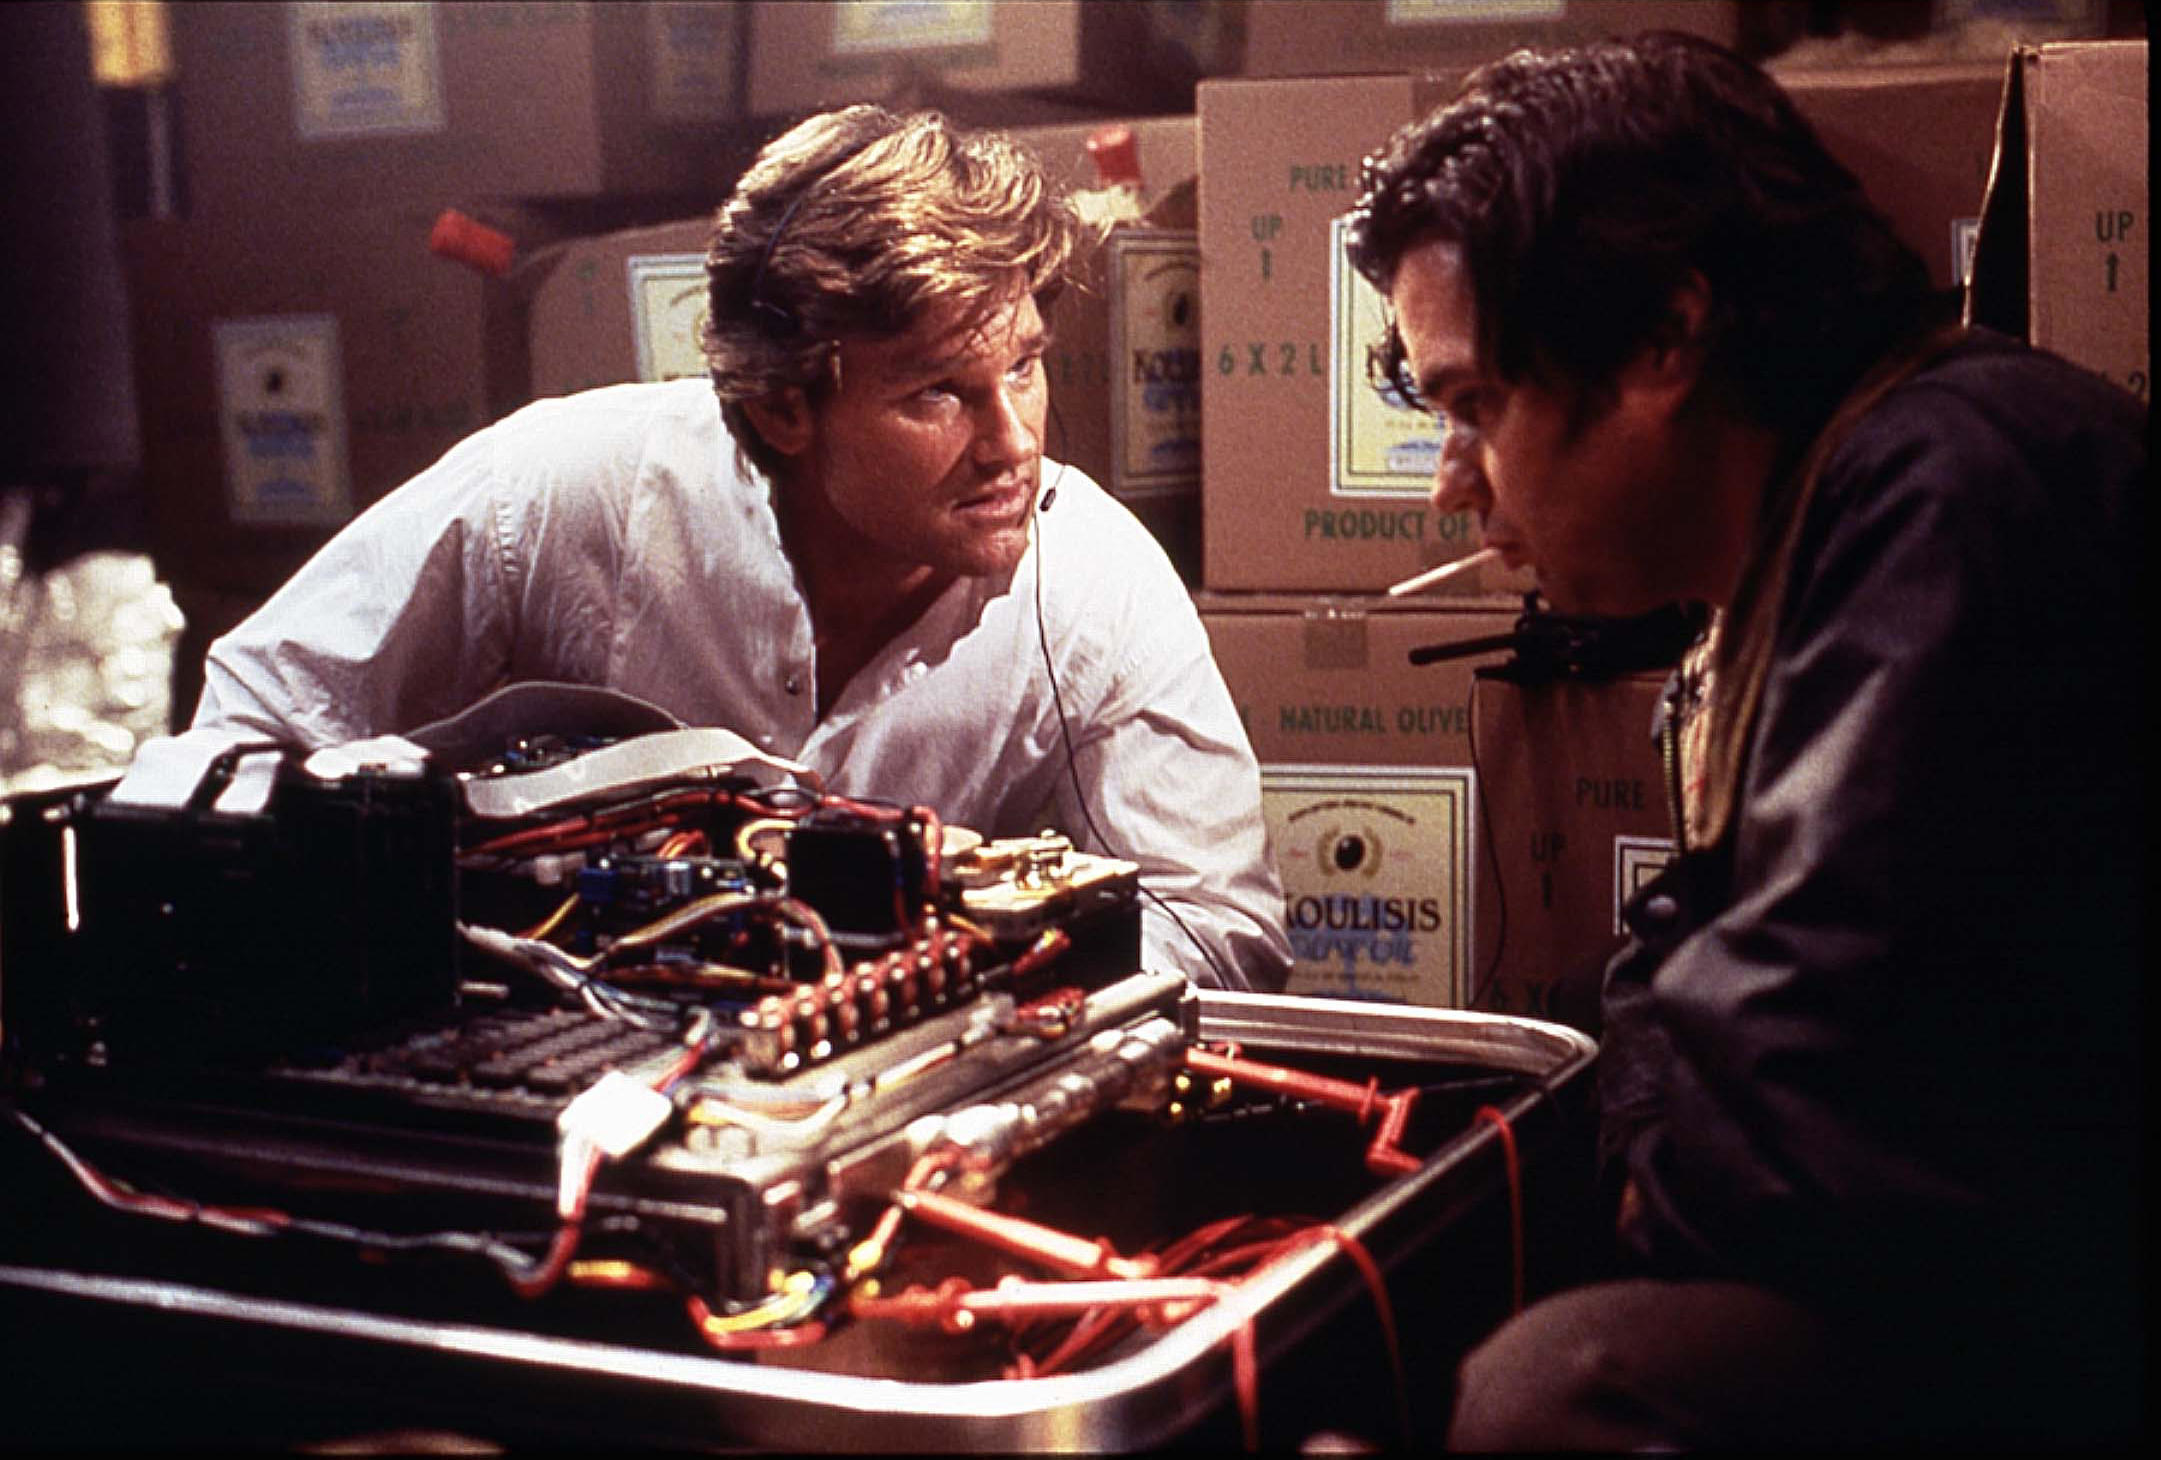 Kurt Russell talks with Oliver Platt near a mechanical device